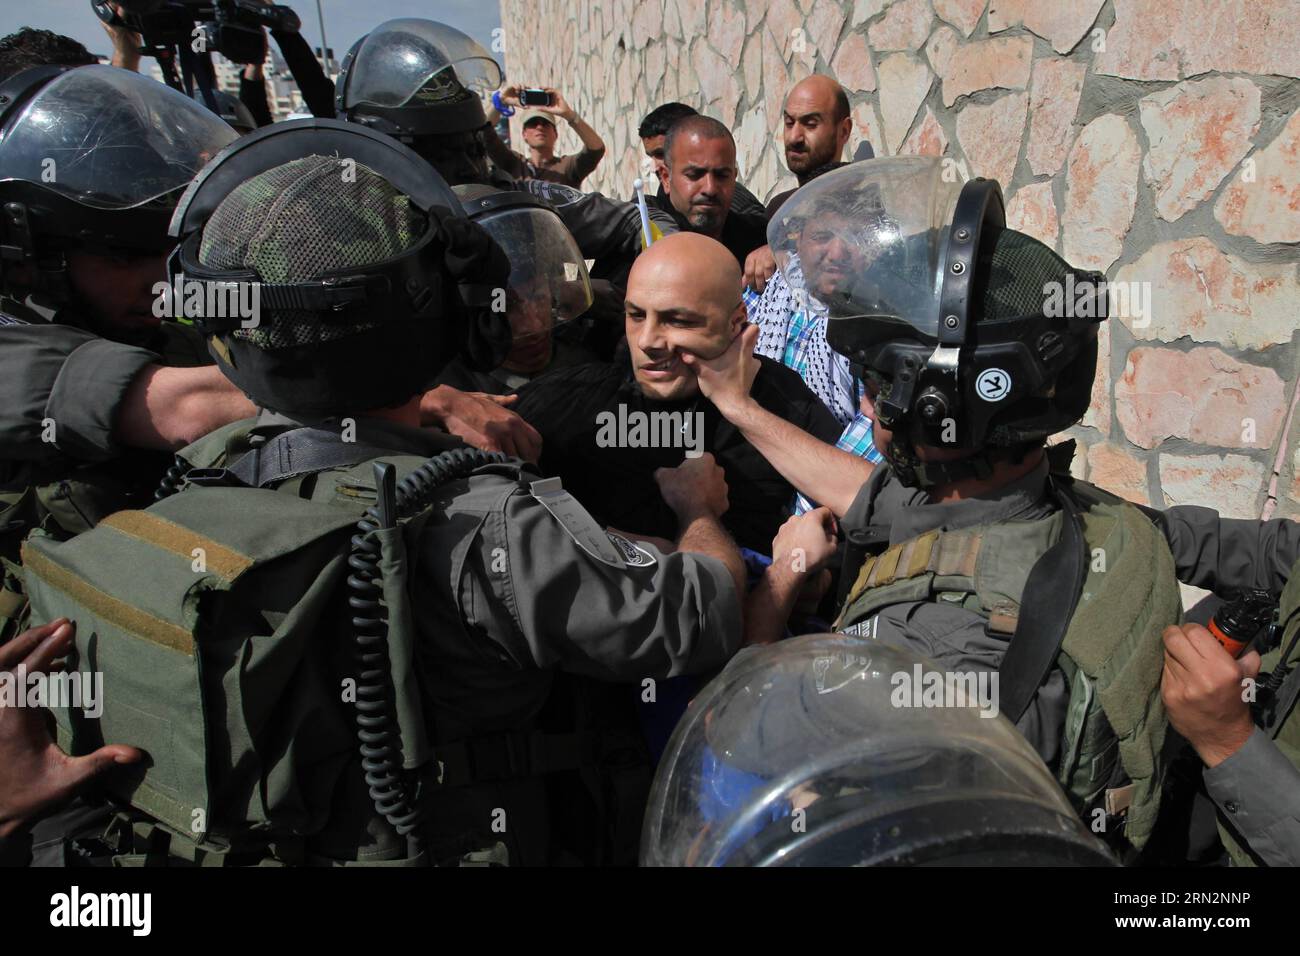 Des soldats israéliens se disputent avec des Palestiniens lors d’une manifestation contre ce que les Palestiniens disent être des confiscations de terres par Israël pour des colonies juives, près de la ville de Cisjordanie d’Abu dis près de Bethléem, le 17 mars 2015. )(lyi) MIDEAST-BETHLEHEM-PROTEST LuayxSababa PUBLICATIONxNOTxINxCHN des soldats israéliens se disputent avec DES PALESTINIENS lors d'une manifestation contre ce que LES PALESTINIENS disent EST le pays par Israël pour les colonies juives près de la ville de CISJORDANIE d'Abu DIS près de Bethléem LE 17 2015 mars Lyi Mideast Bethlehem PROTEST LuayxSababa PUBLICATIONxNOTxNOTxINxCHN Banque D'Images